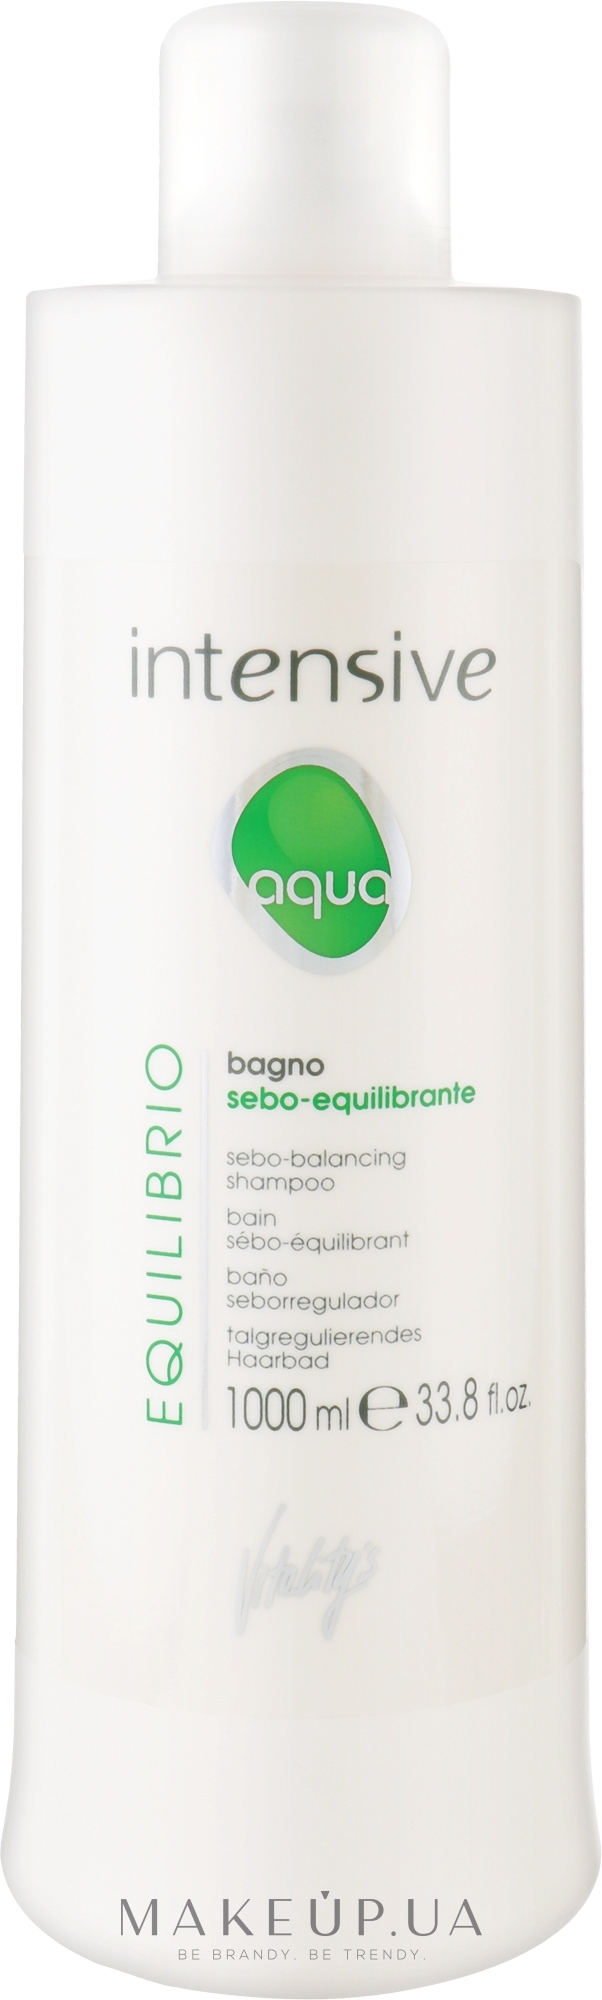 Шампунь себонормализирующий - Vitality's Intensive Aqua Equilibrio Sebo-Balancing Shampoo — фото 1000ml